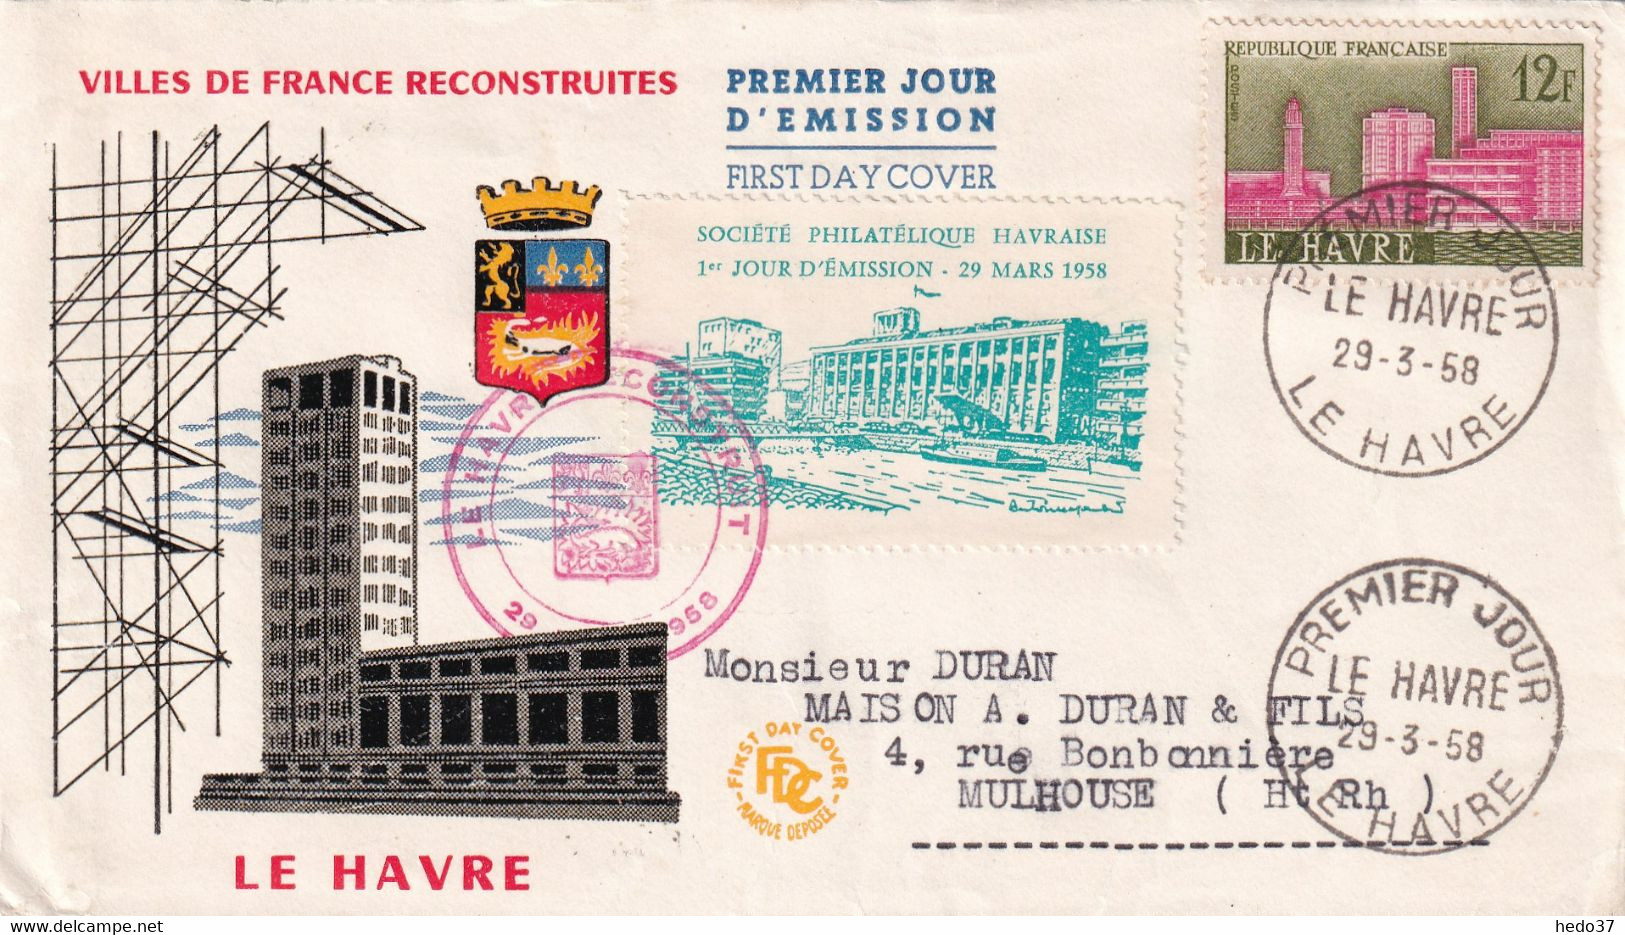 France Vignettes - Vignette Le Havre 1958 - Philatelic Fairs